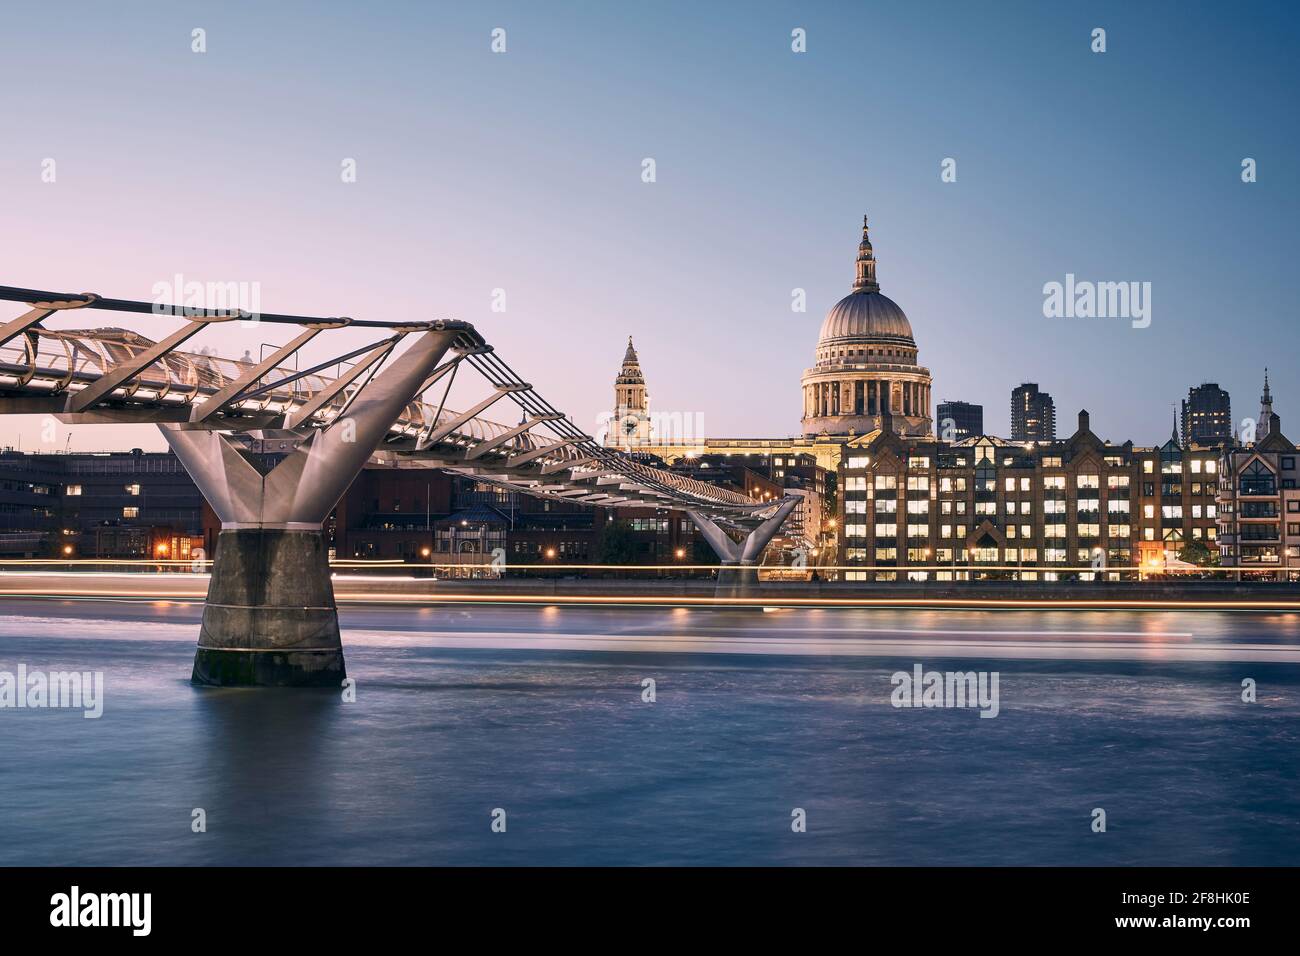 Paysage urbain de Londres au crépuscule. Front de mer de la ville avec passerelle Millennium contre la cathédrale Saint-Paul. Royaume-Uni. Banque D'Images